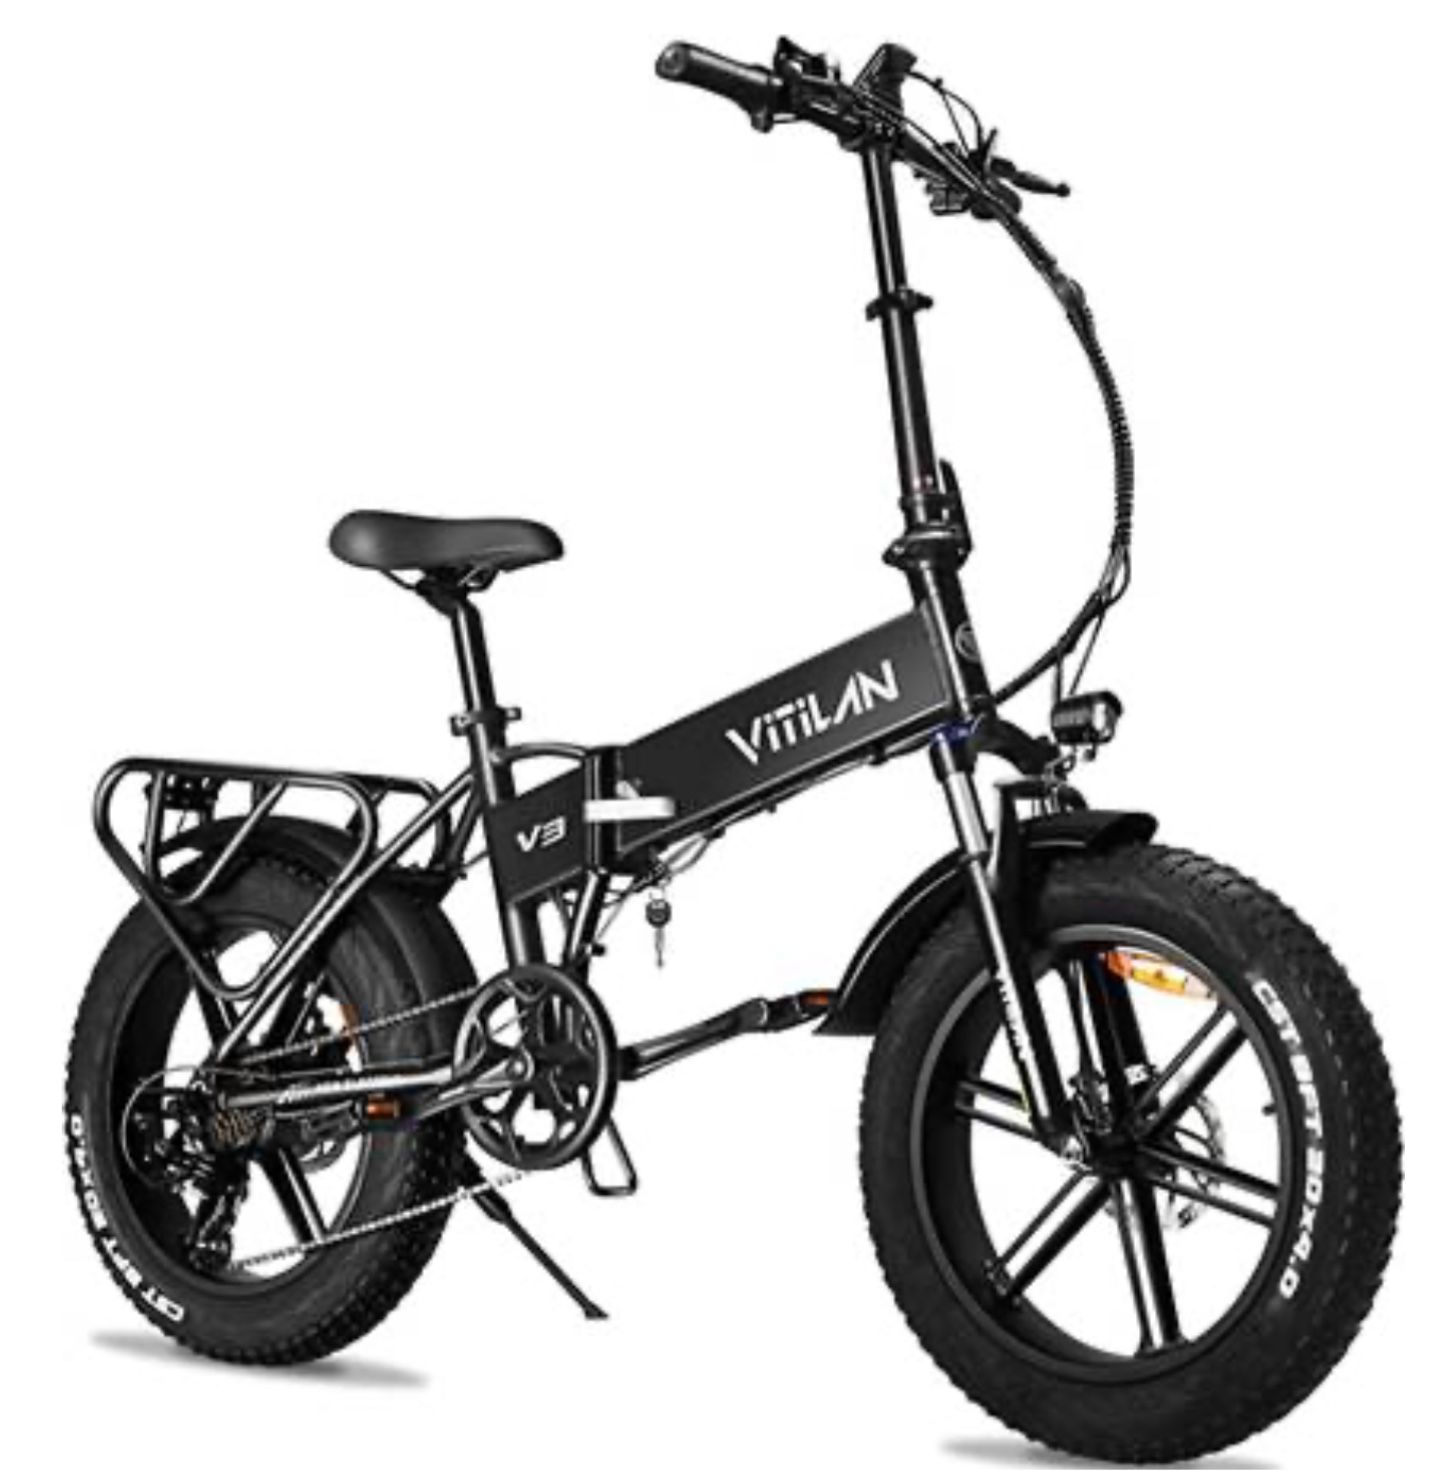 Vitilan V3 Foldable Electric Bike